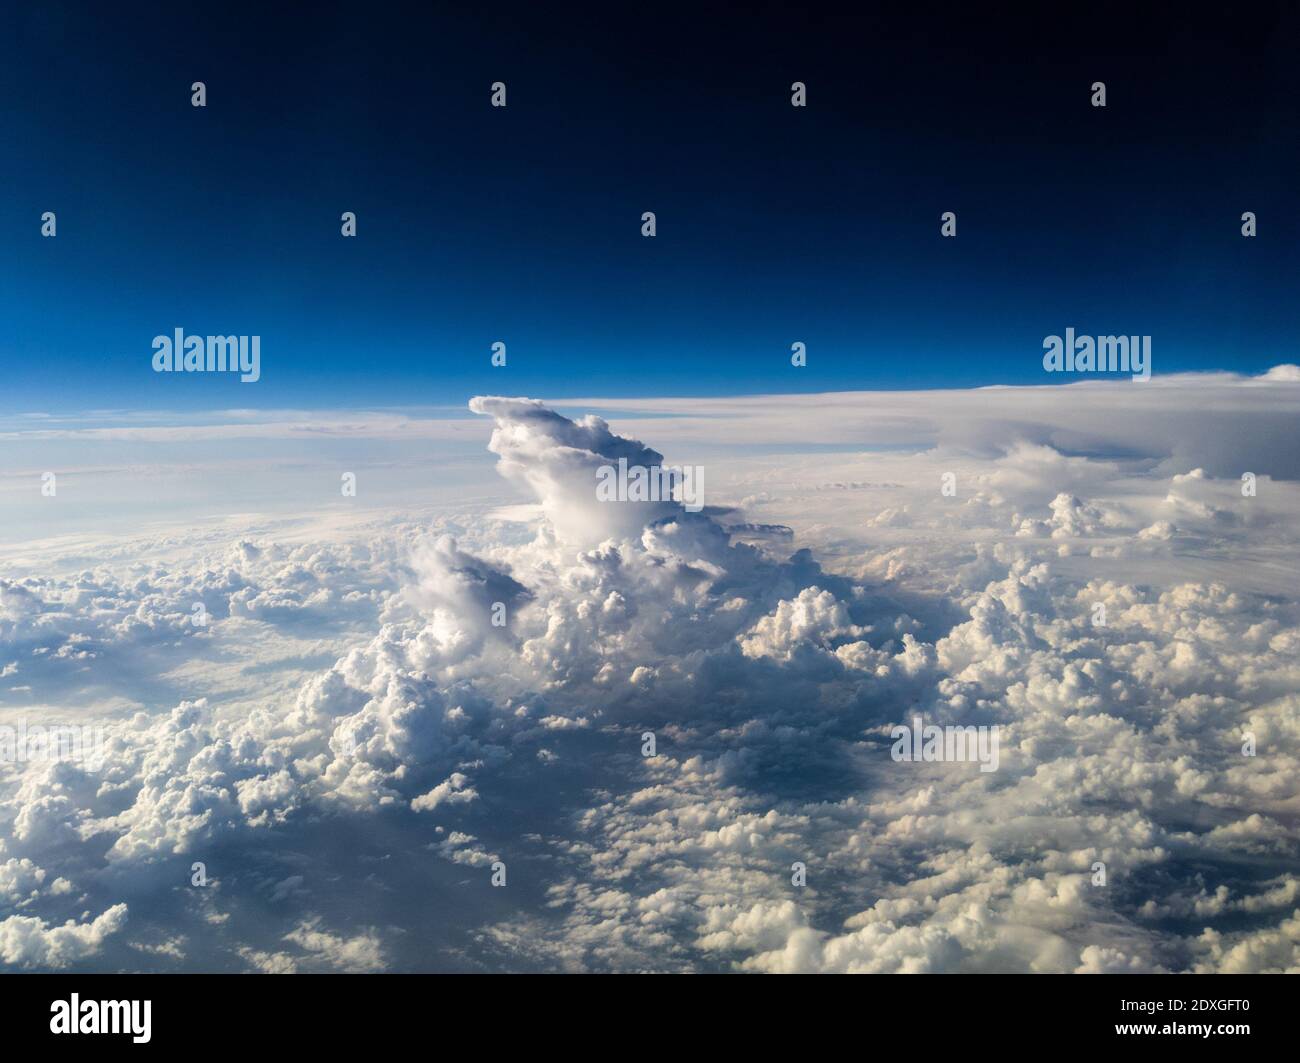 Vista aérea de las nubes blancas de cumulonimbus de forma única debajo de fondo azul oscuro Foto de stock